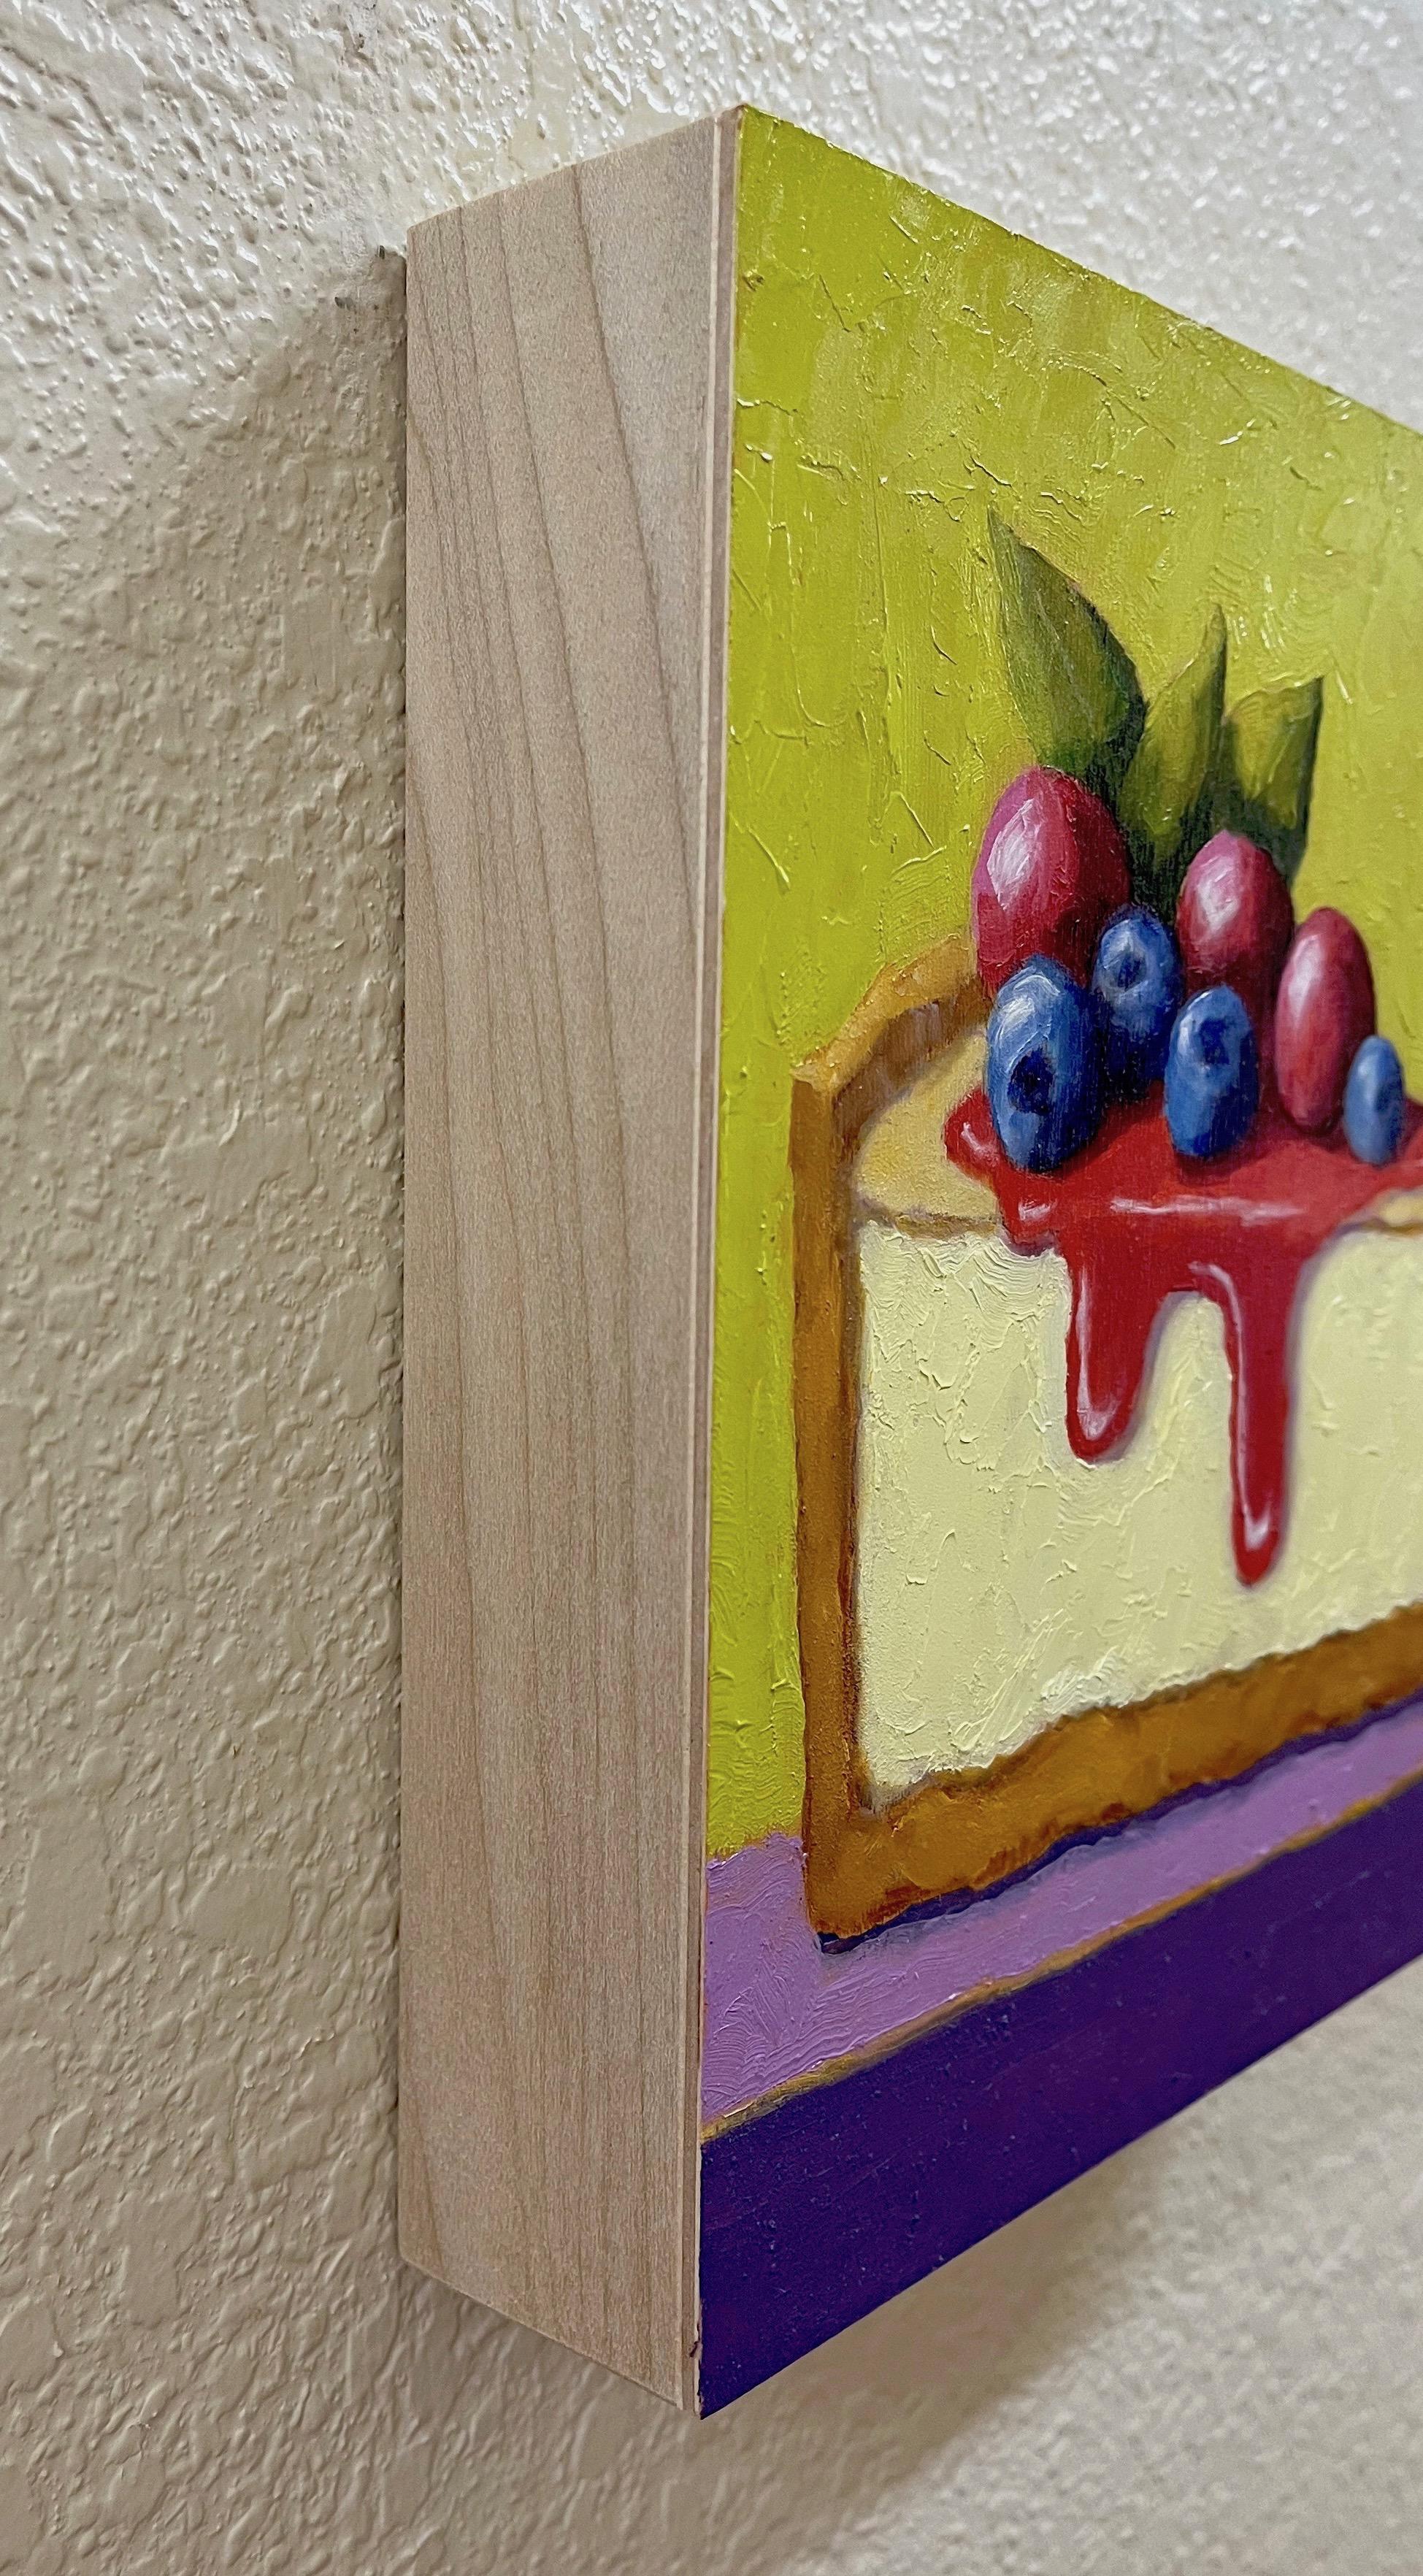 Gâteau au fromage, peinture à l'huile - Painting de Pat Doherty